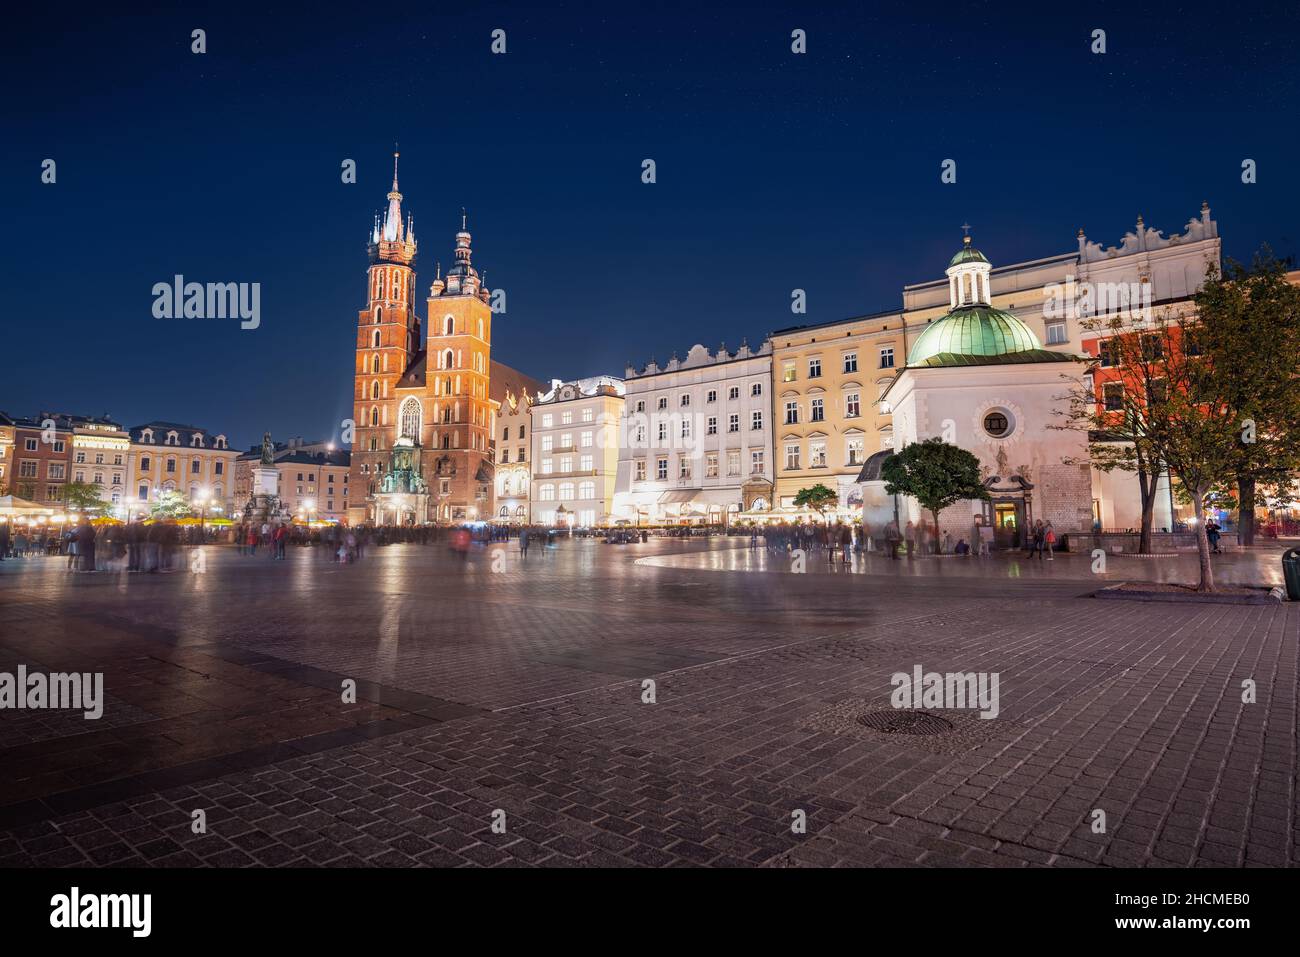 Place du marché principale la nuit avec la basilique Sainte-Marie et l'église Saint-Wojciech - Cracovie, Pologne Banque D'Images